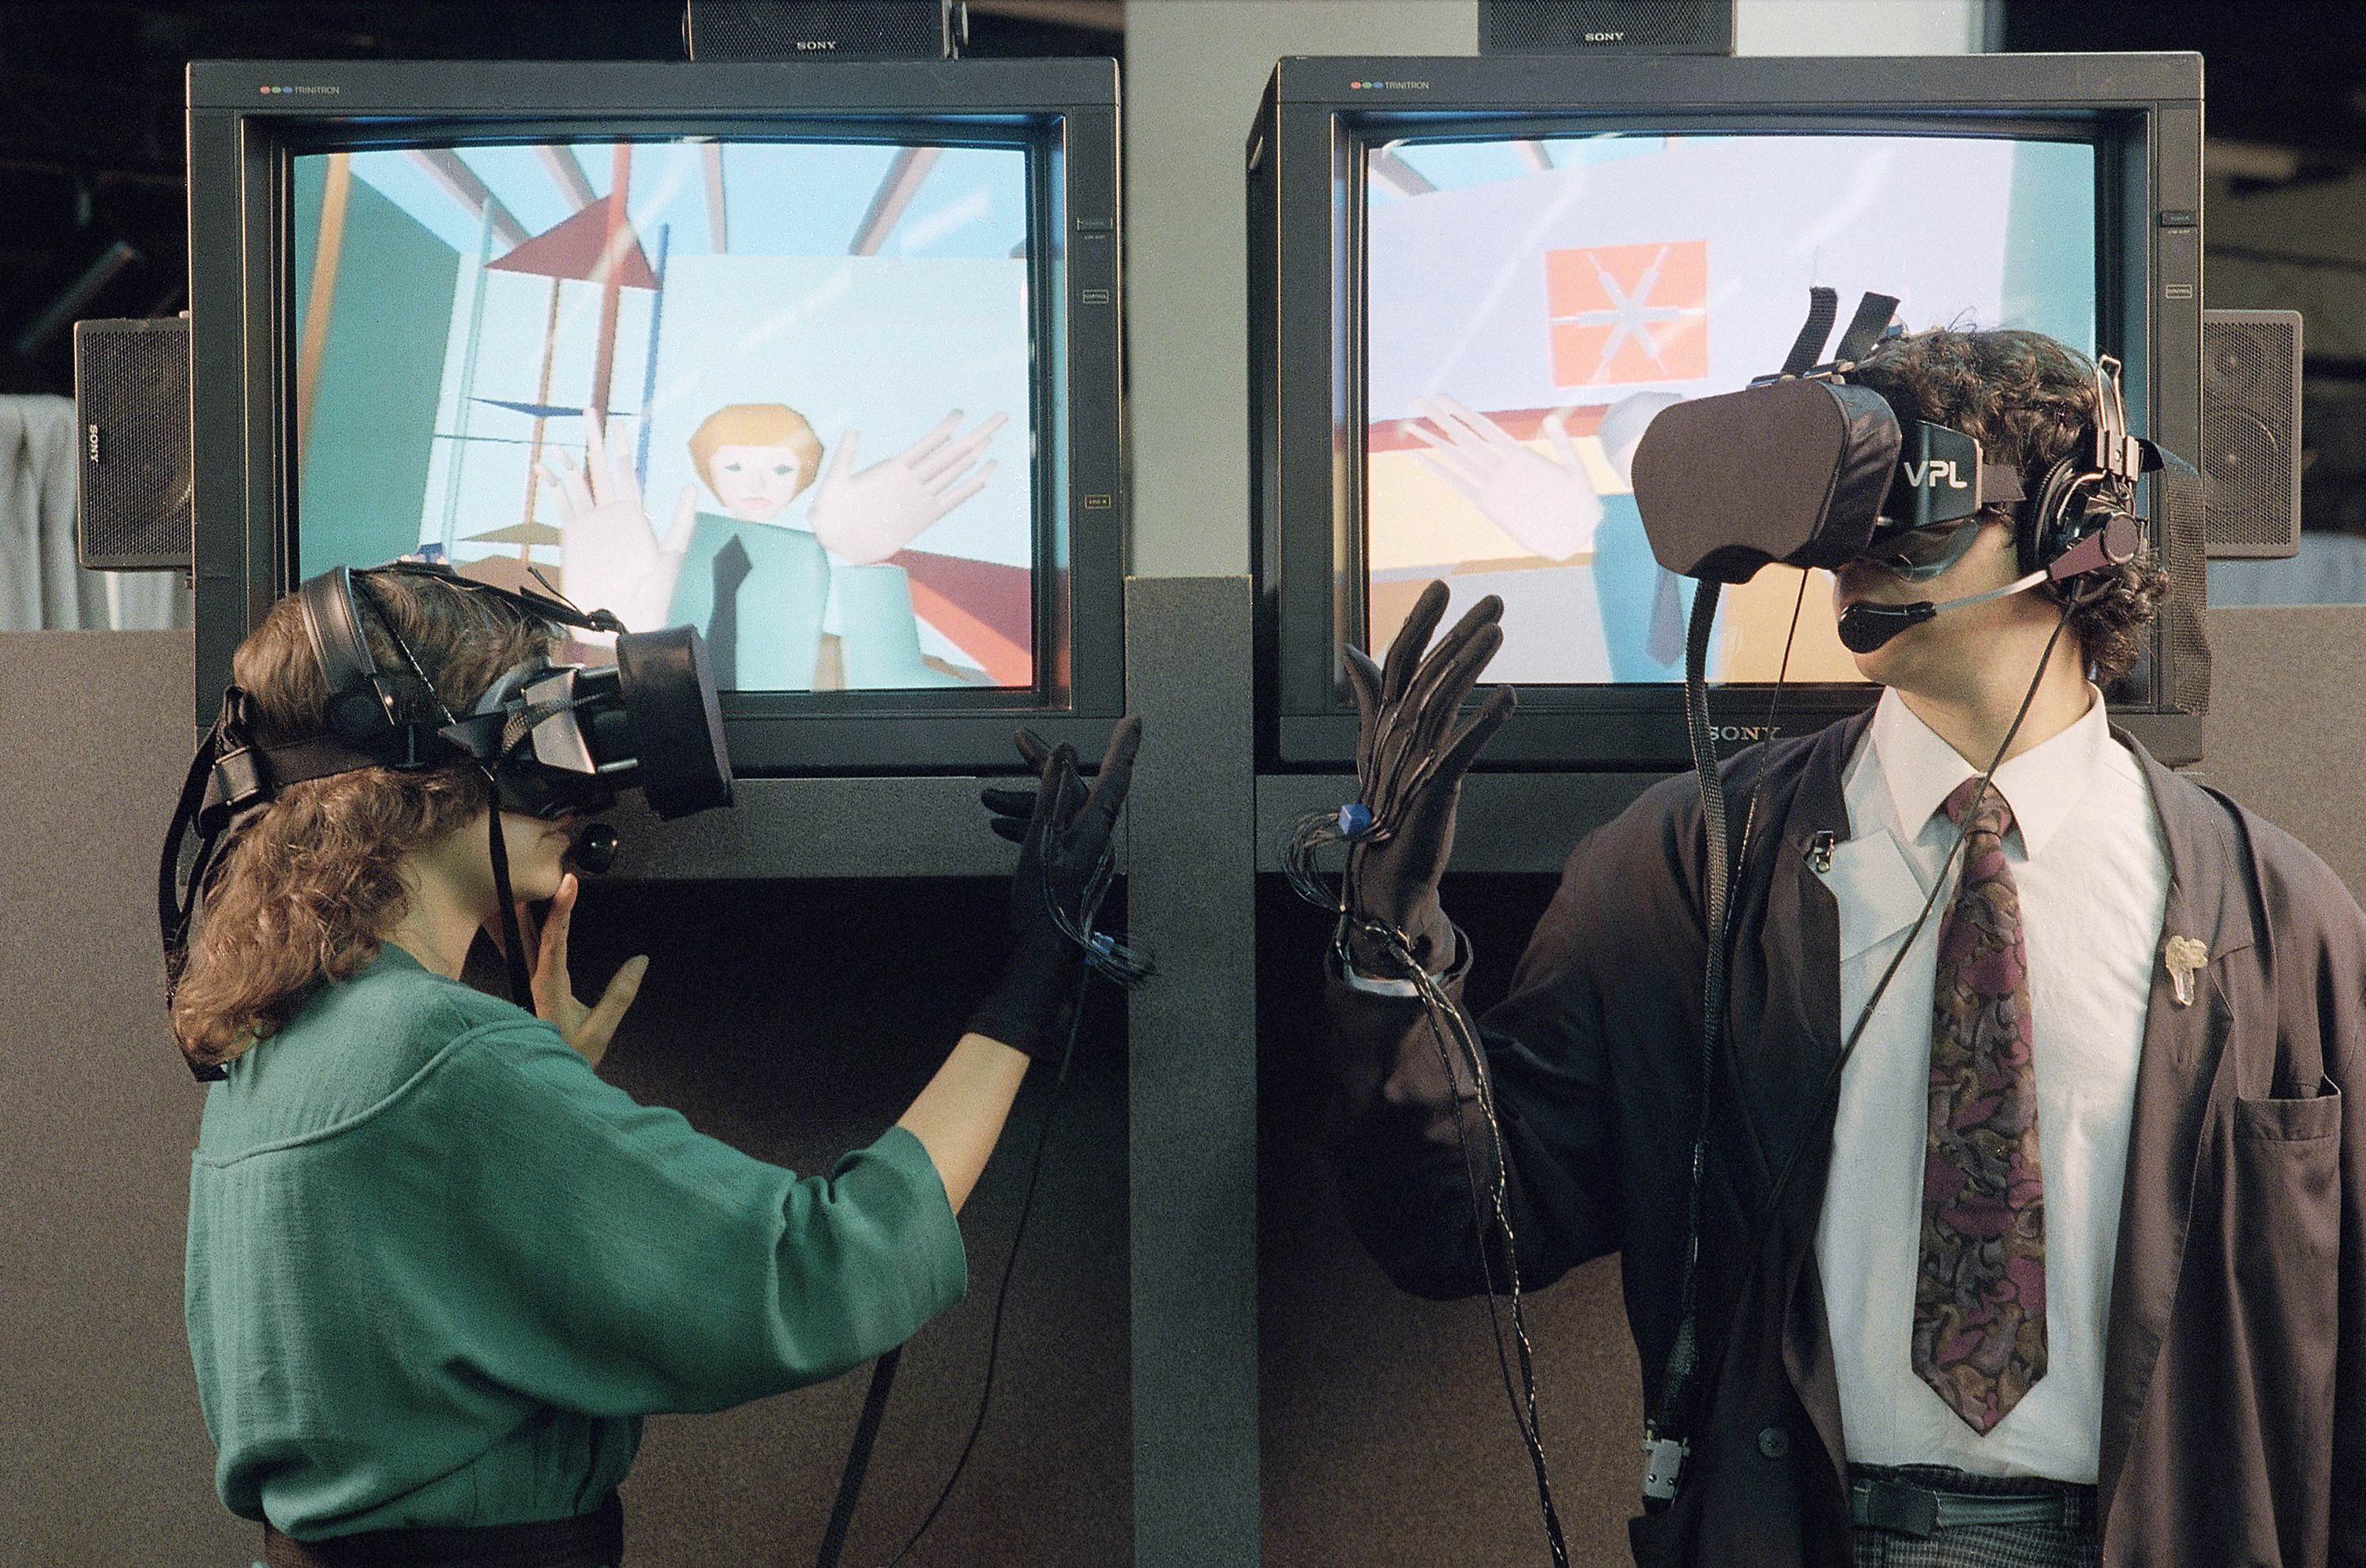 Vr sword. 1984 Год — rb2, контроллеры first VR. Айвен Сазерленд VR ar шлем. Шлем виртуальной реальности 1990. Rb2 очки виртуальной реальности.